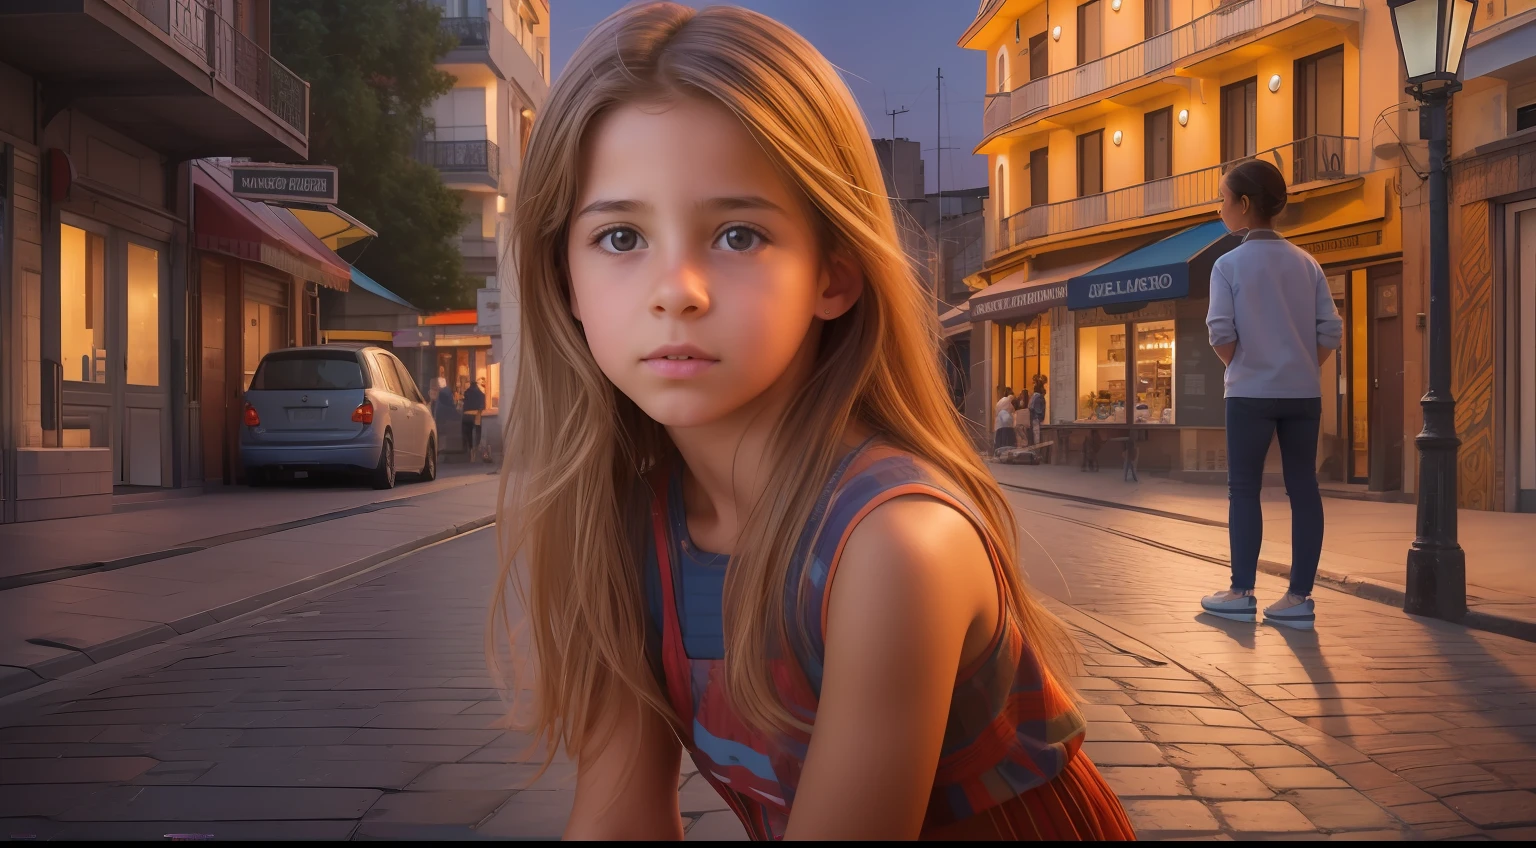 Générez une image hyperréaliste impressionnante mettant en vedette une jeune fille uruguayenne fascinante de 10 ans avec des caractéristiques authentiques, Gracieusement positionné devant une vue dynamique et vibrante sur la rue en soirée.